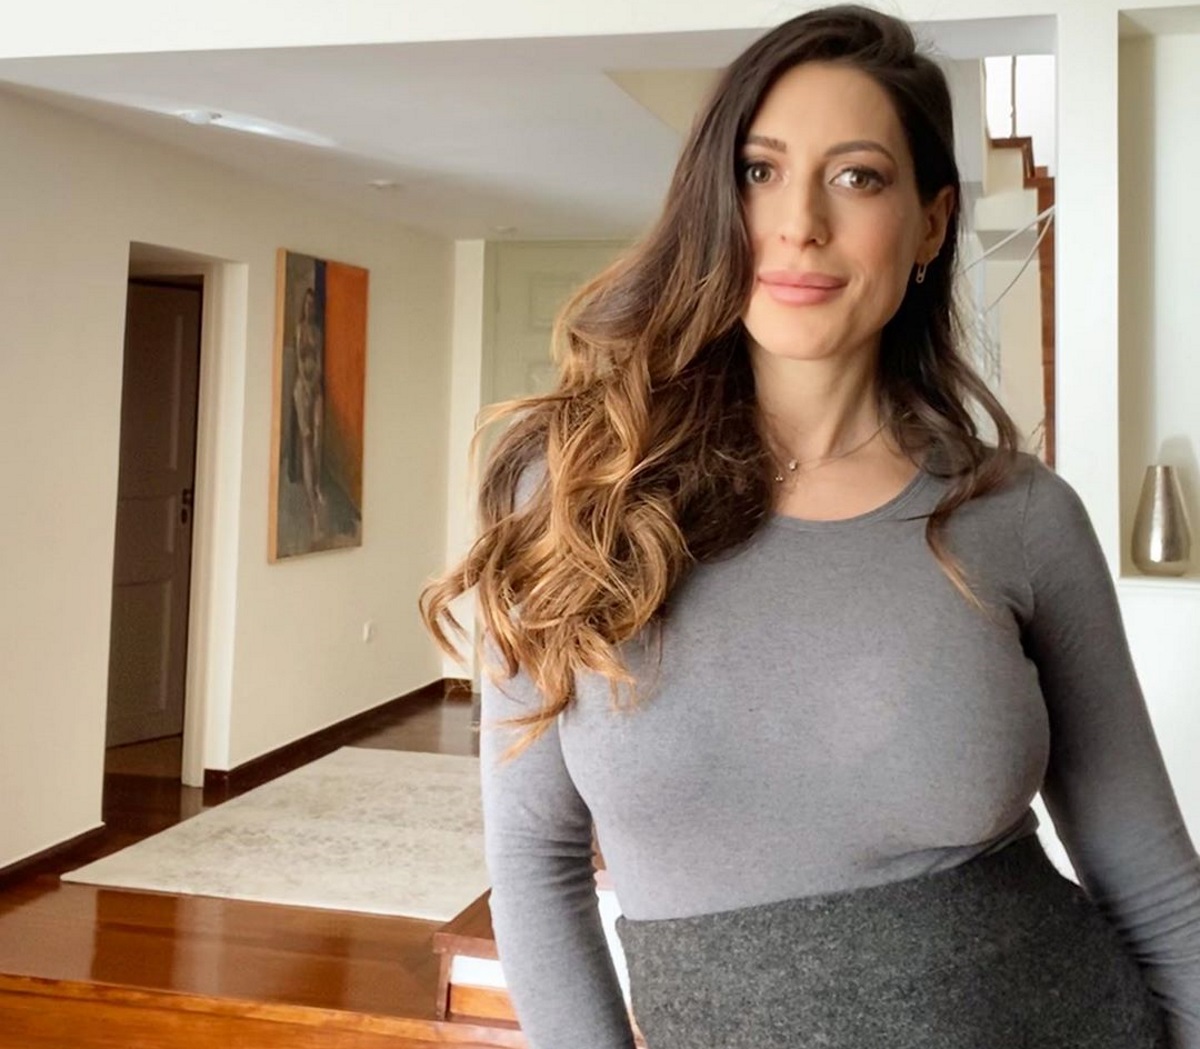 Φλορίντα Πετρουτσέλι: Πόσα κιλά έχει πάρει στην δεύτερη εγκυμοσύνη της;